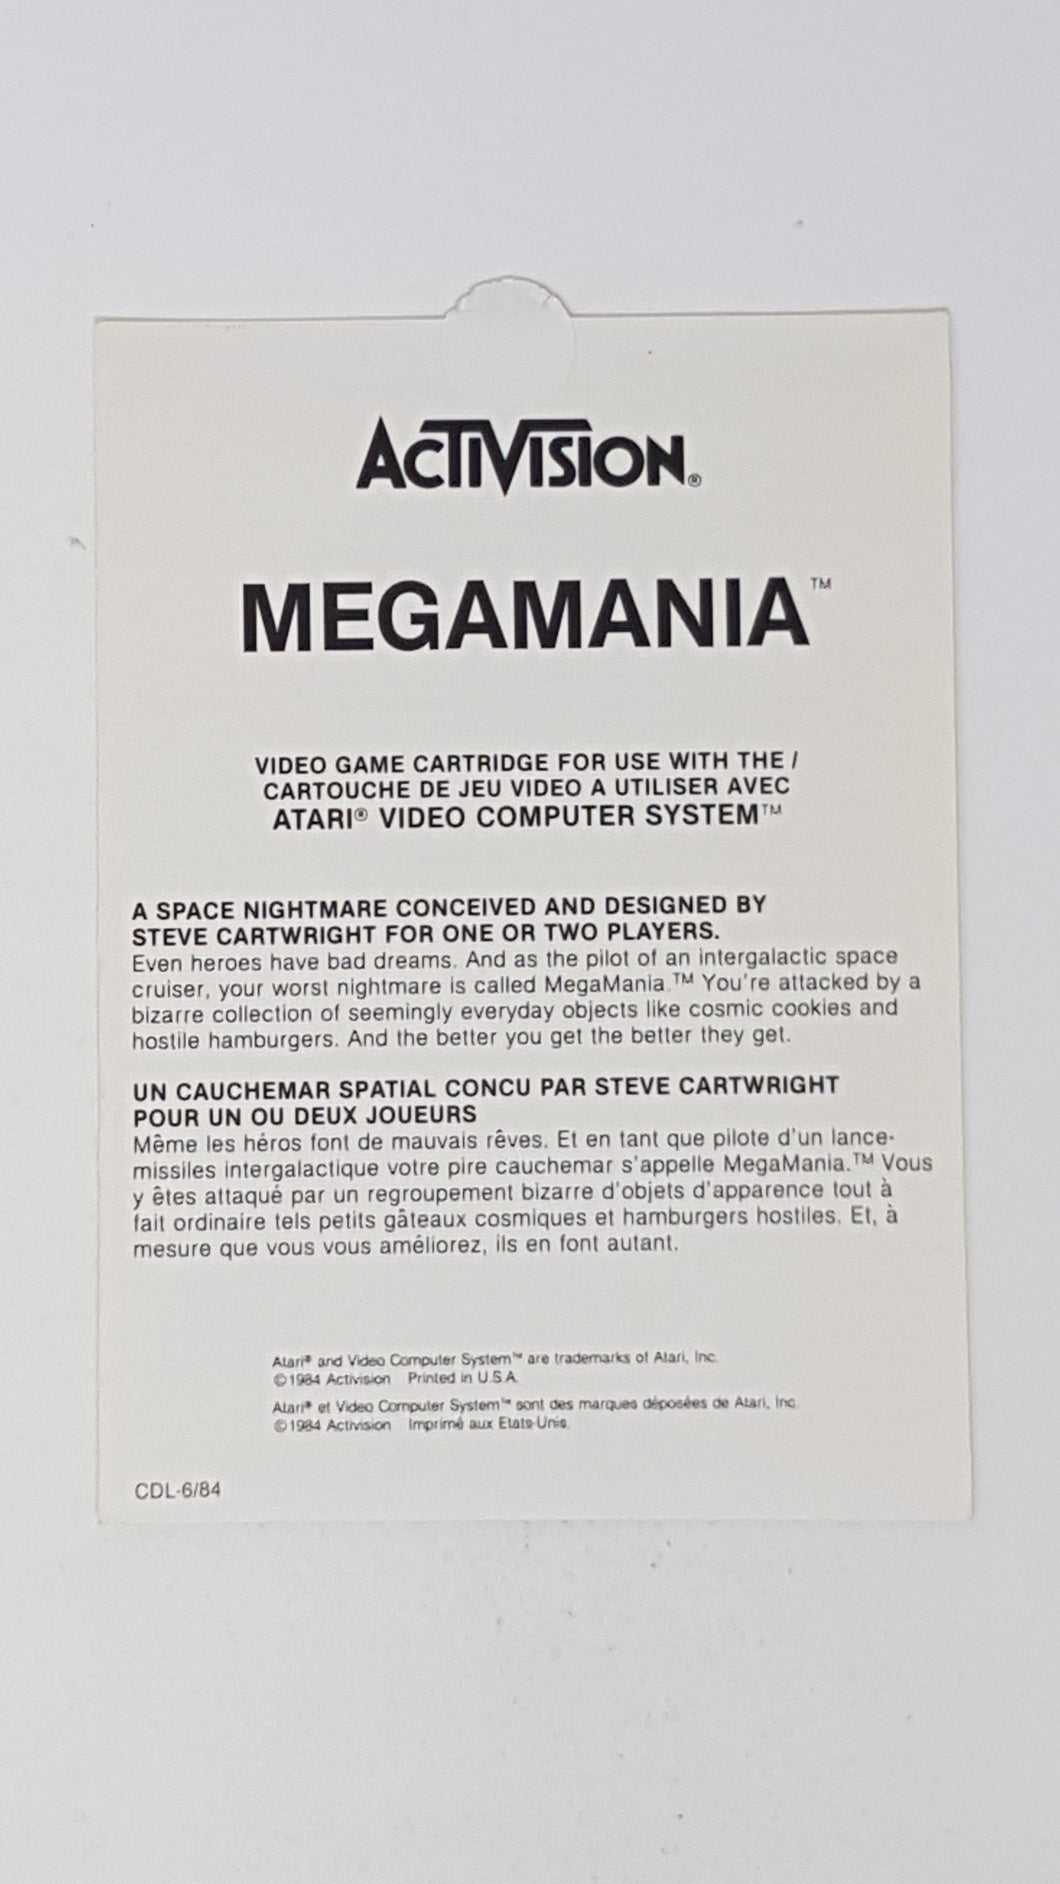 Megamania [Insert] - Atari 2600